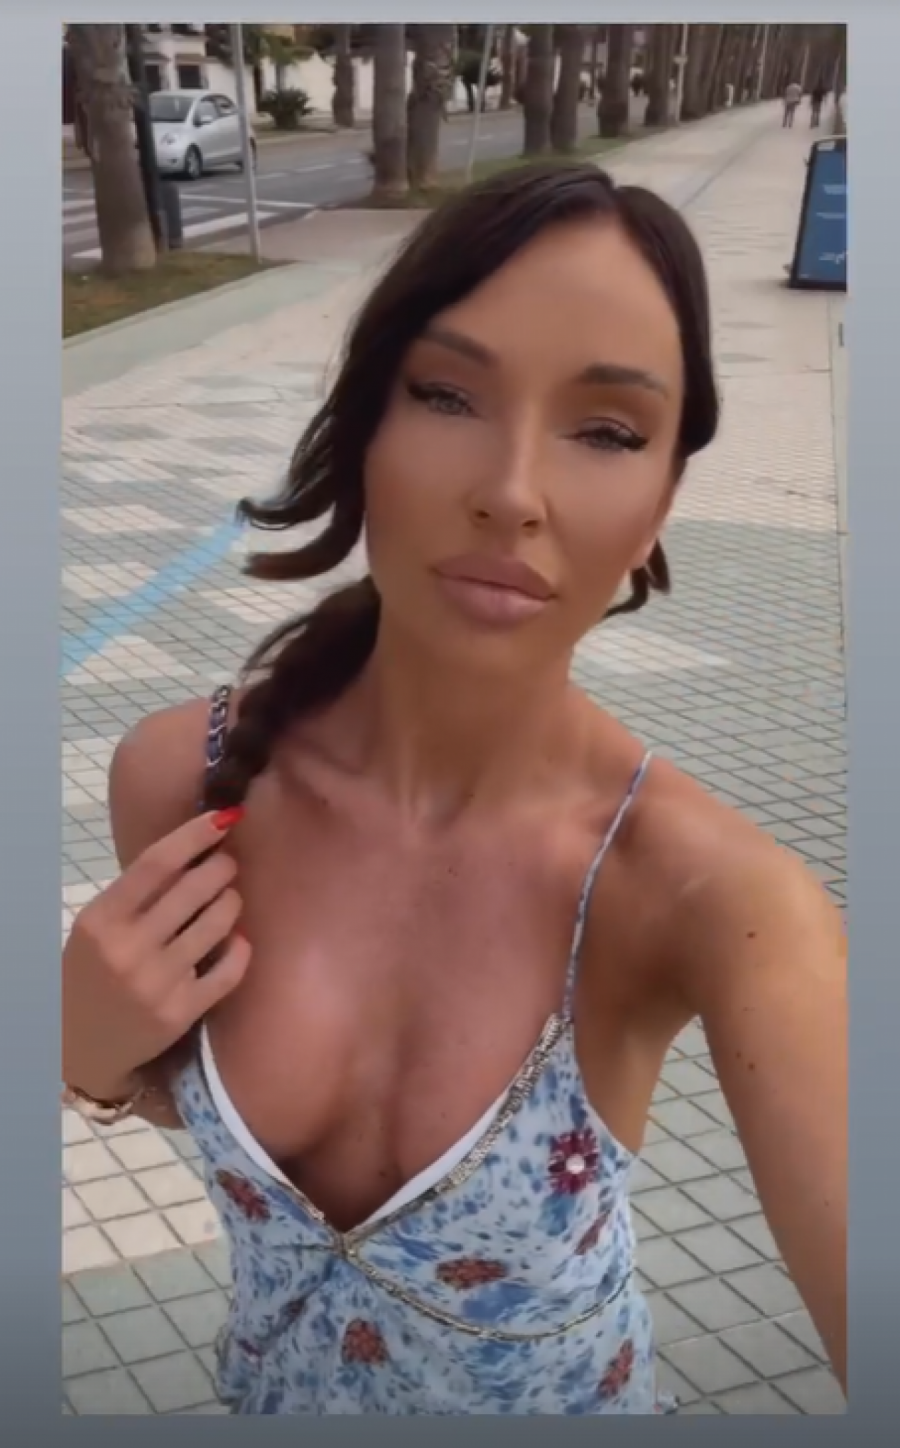 POSLE OVE FOTKE MUŠKARCIMA NIJE DOBRO Katarina Živković pozirala u mini bikiniju, pa napravila totalni haos na društvenim mrežama (FOTO)